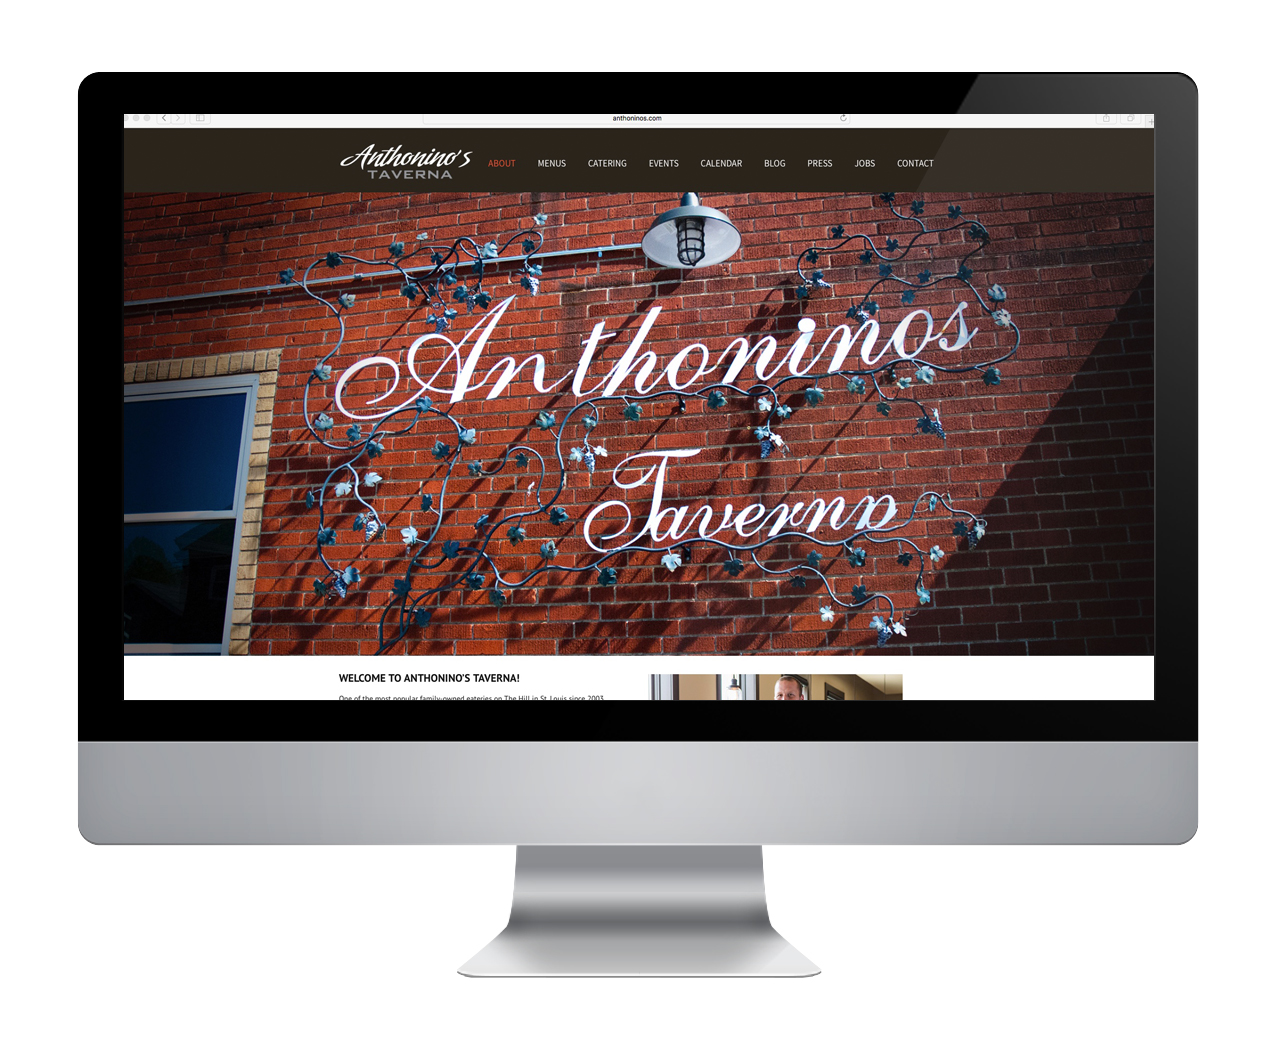 Anthonino's Taverna